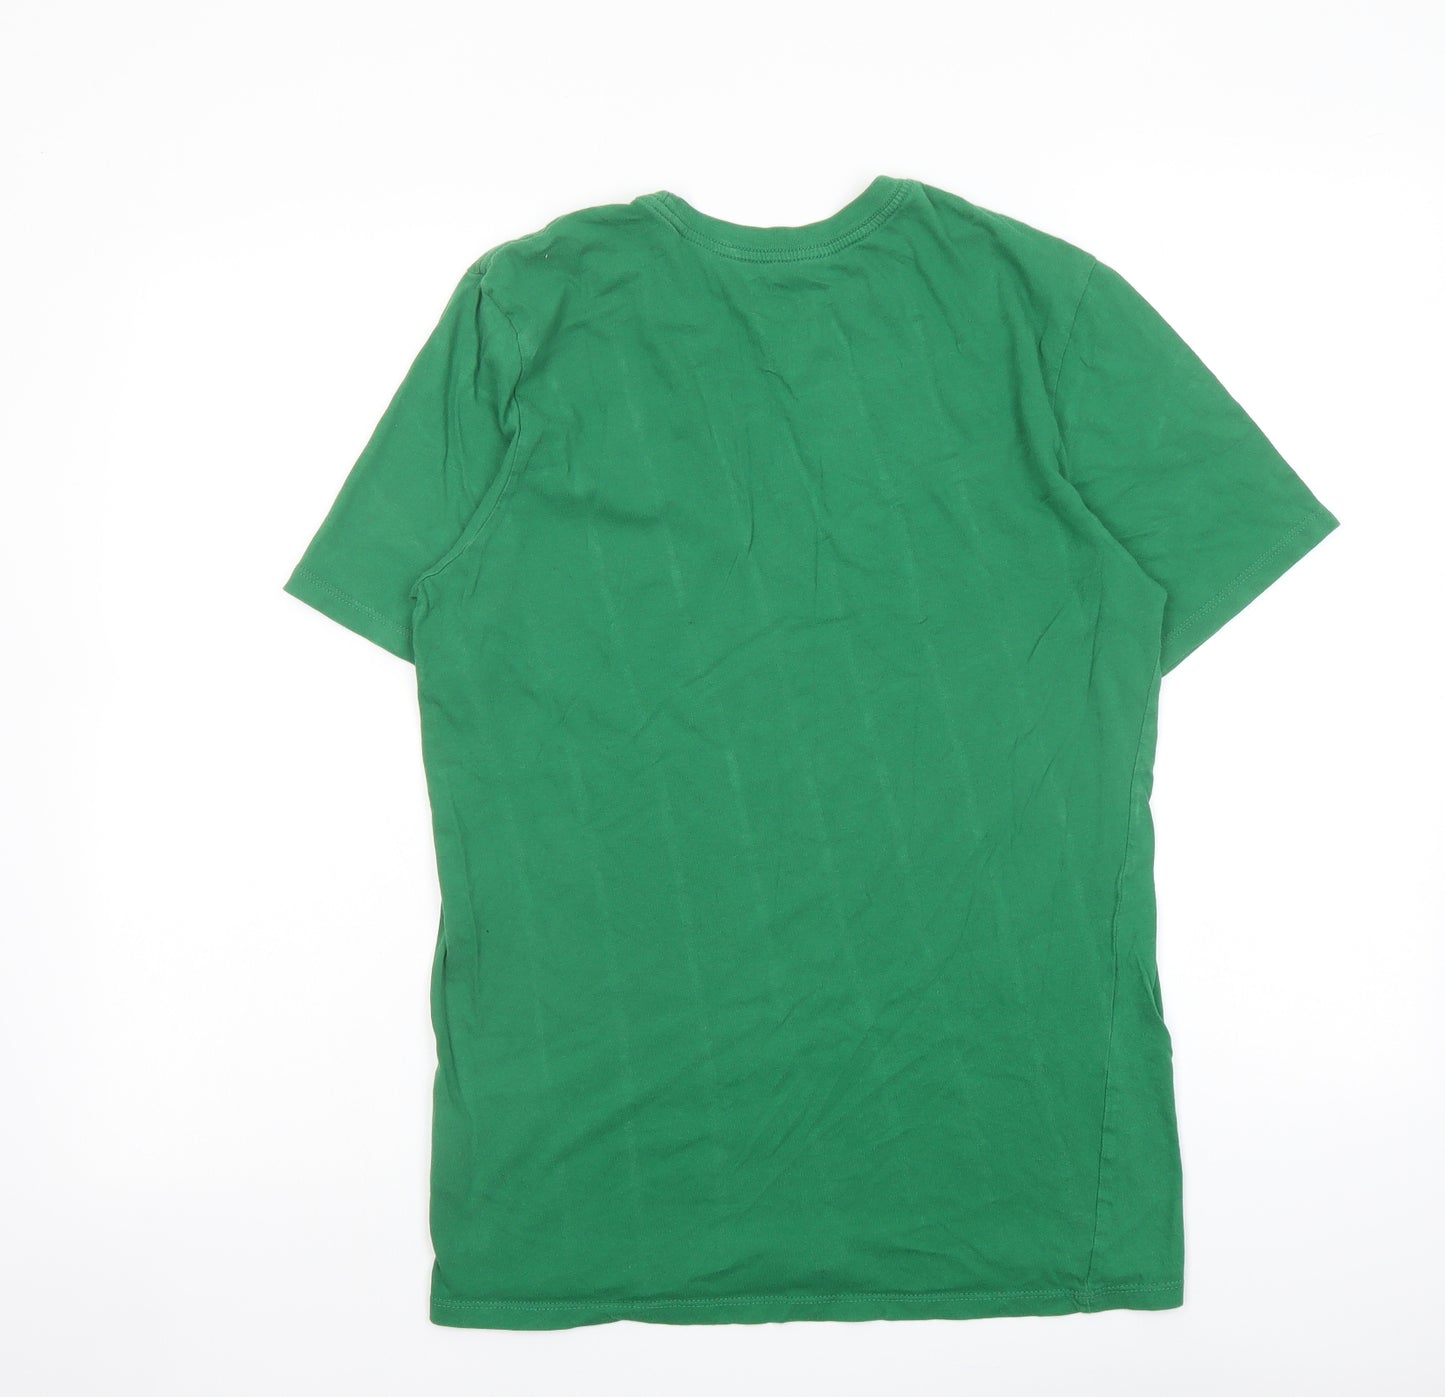 Nike Womens Green Cotton Basic T-Shirt Size M Round Neck - Unisex